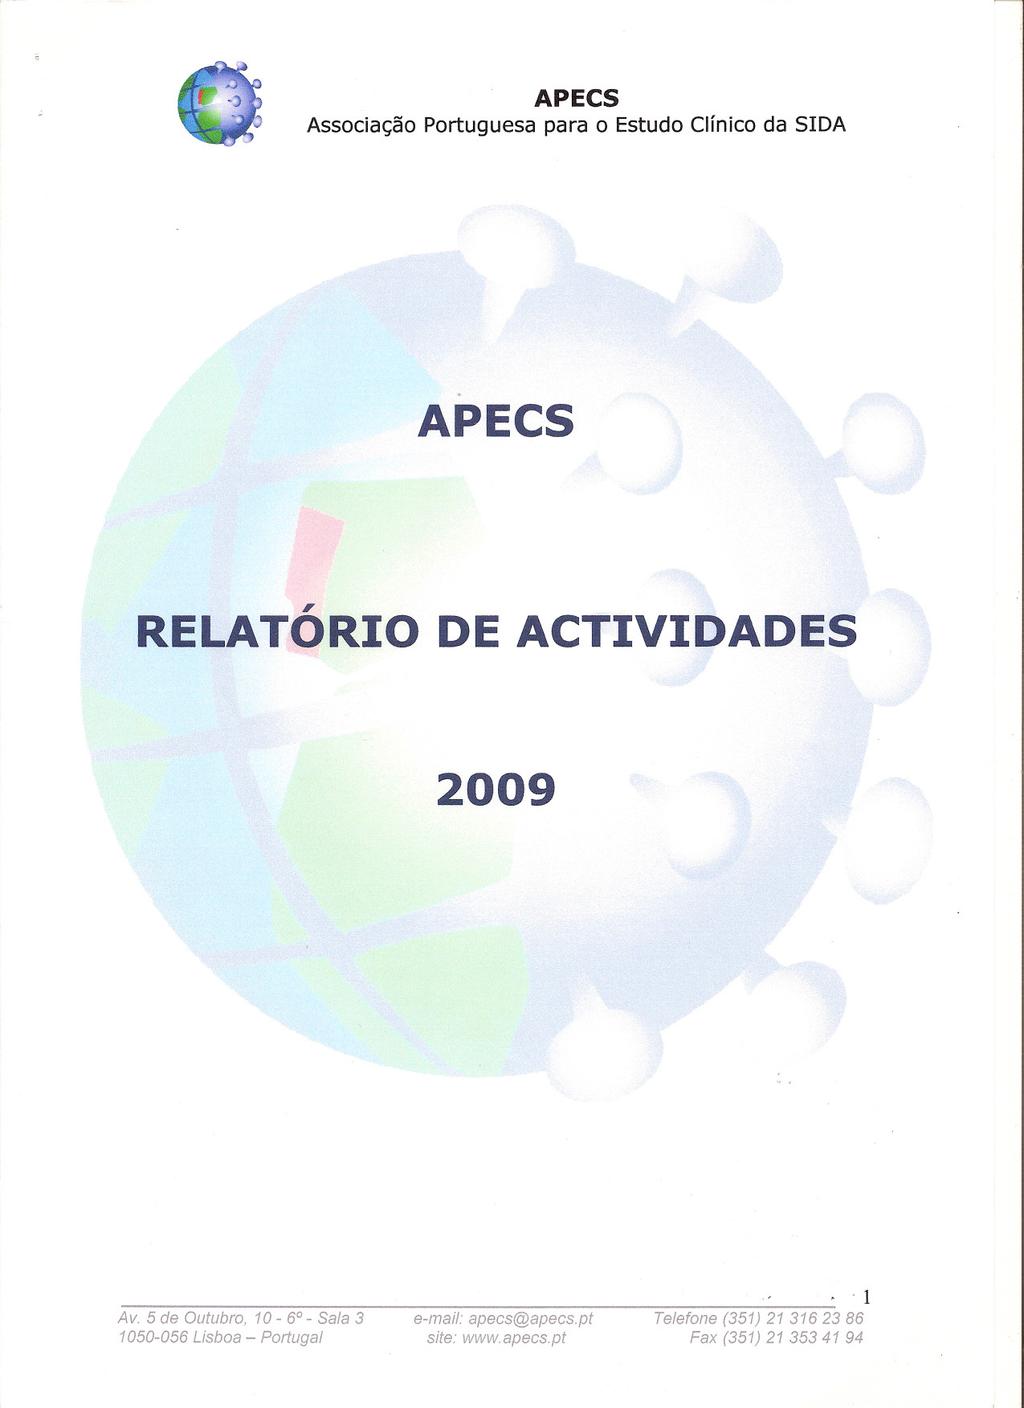 APECS, RELATORIO DE ACTIVIDADES 2009 1050-056 Lisboa